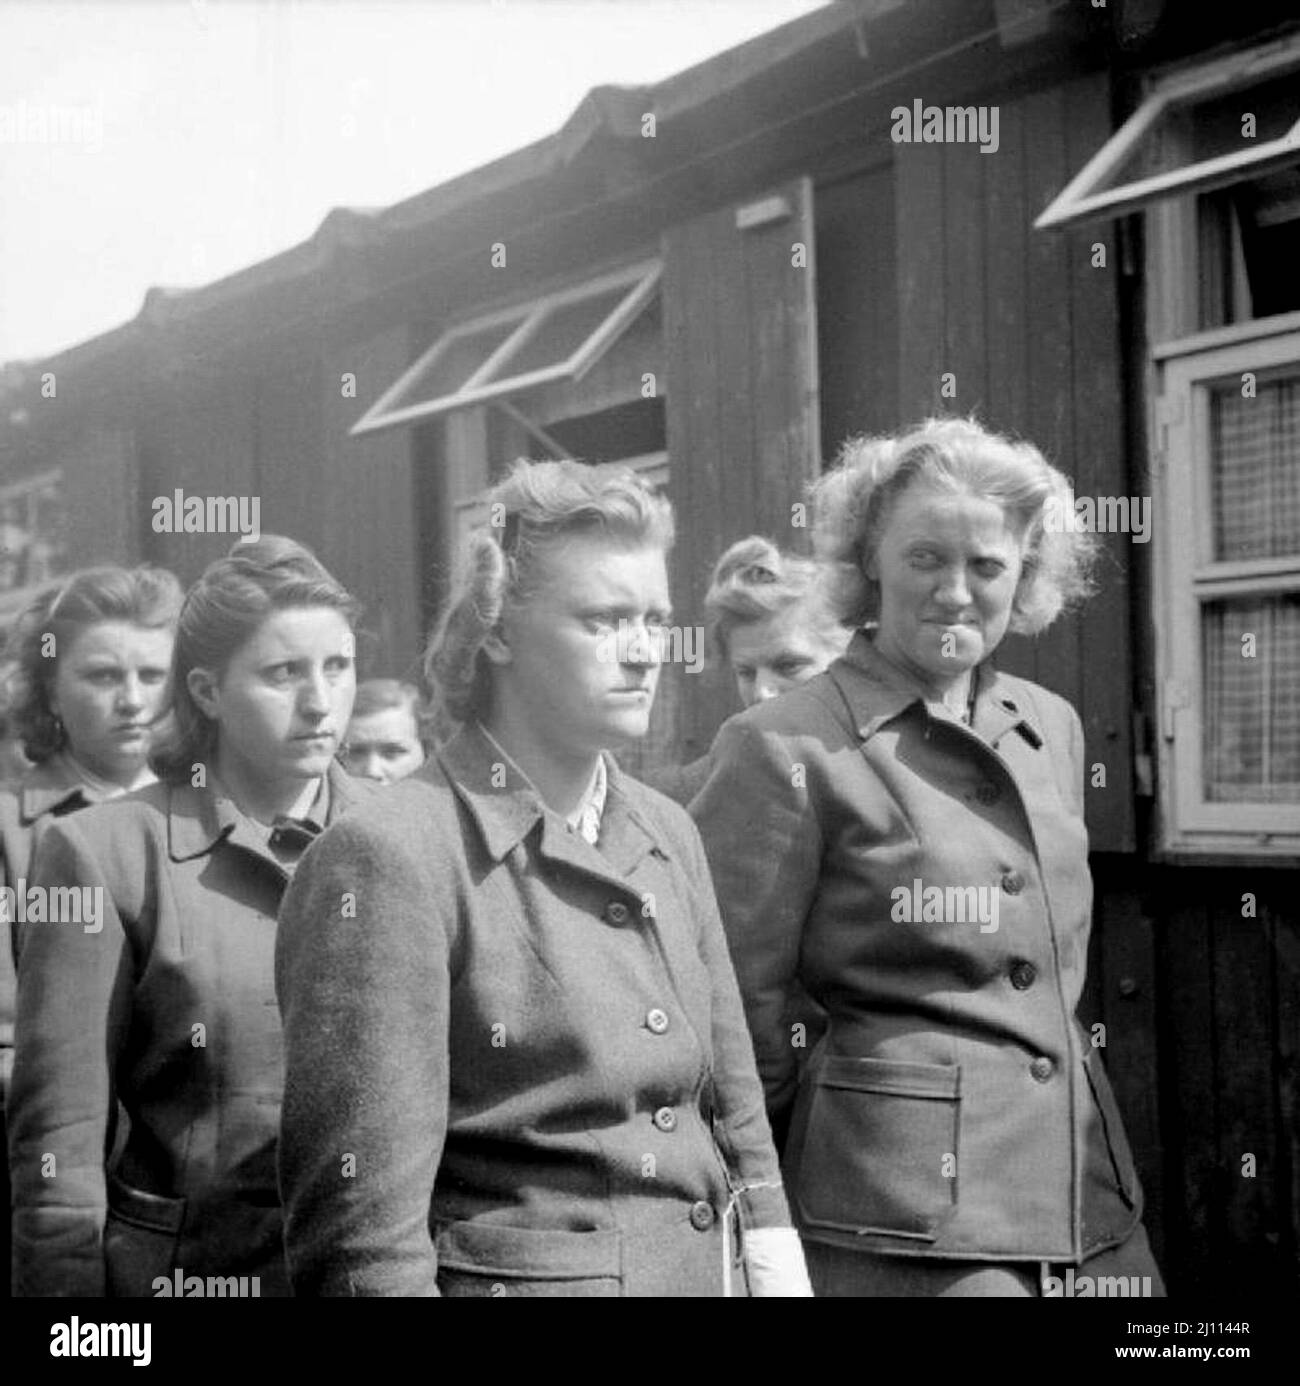 Les gardes de camp de femmes SS sont parades pour le travail de défricher les morts. Parmi les femmes figurent Hildegard Kanbach (première à partir de la gauche), Irene Haschke (au centre, troisième à partir de la droite), la garde-chef, Elisabeth Volkenrath (deuxième à partir de la droite, partiellement cachée) et Herta Bothe (première à partir de la droite). Herta Bothe a accompagné une marche de mort de femmes du centre de la Pologne à Bergen-Belsen. Elle a été condamnée à 10 ans d'emprisonnement et libérée à l'avance le 22 décembre 1951. Elisabeth Volkenrath était la directrice du camp et condamnée à mort. Elle a été pendue le 13 1945 décembre. Irene Haschke a été condamnée à 10 Banque D'Images